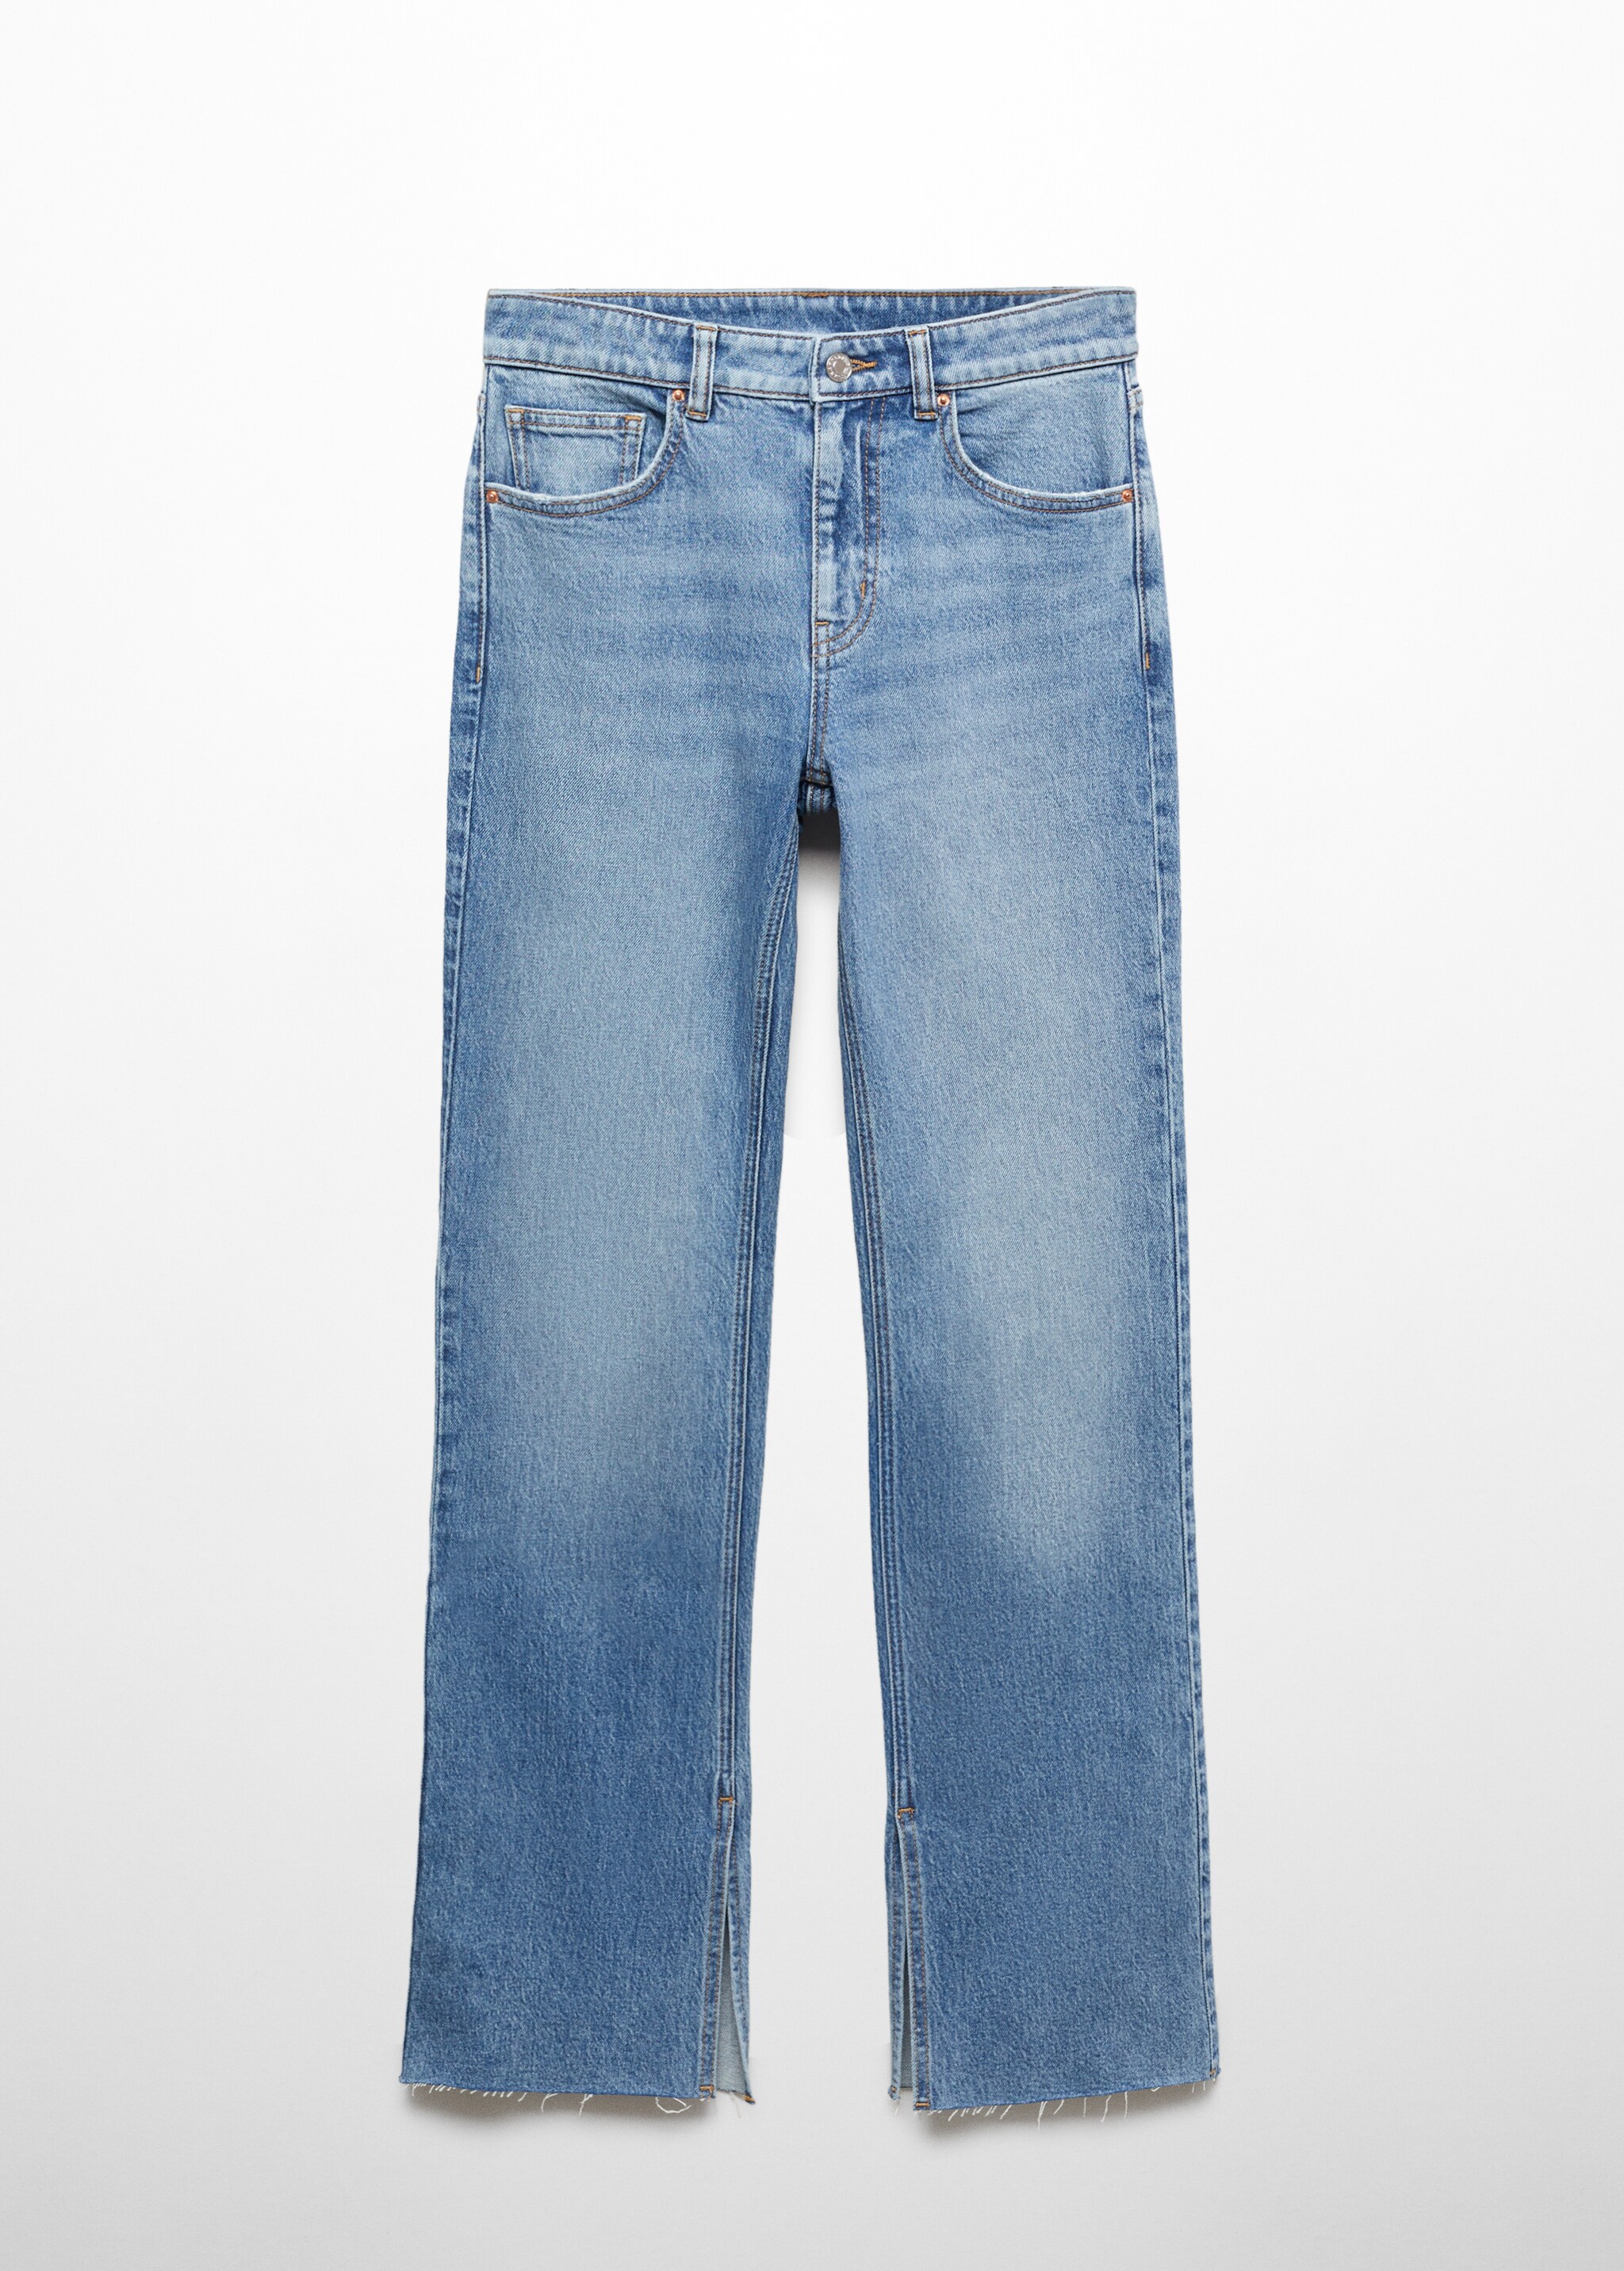 Jeans rectos tiro medio aberturas - Artículo sin modelo